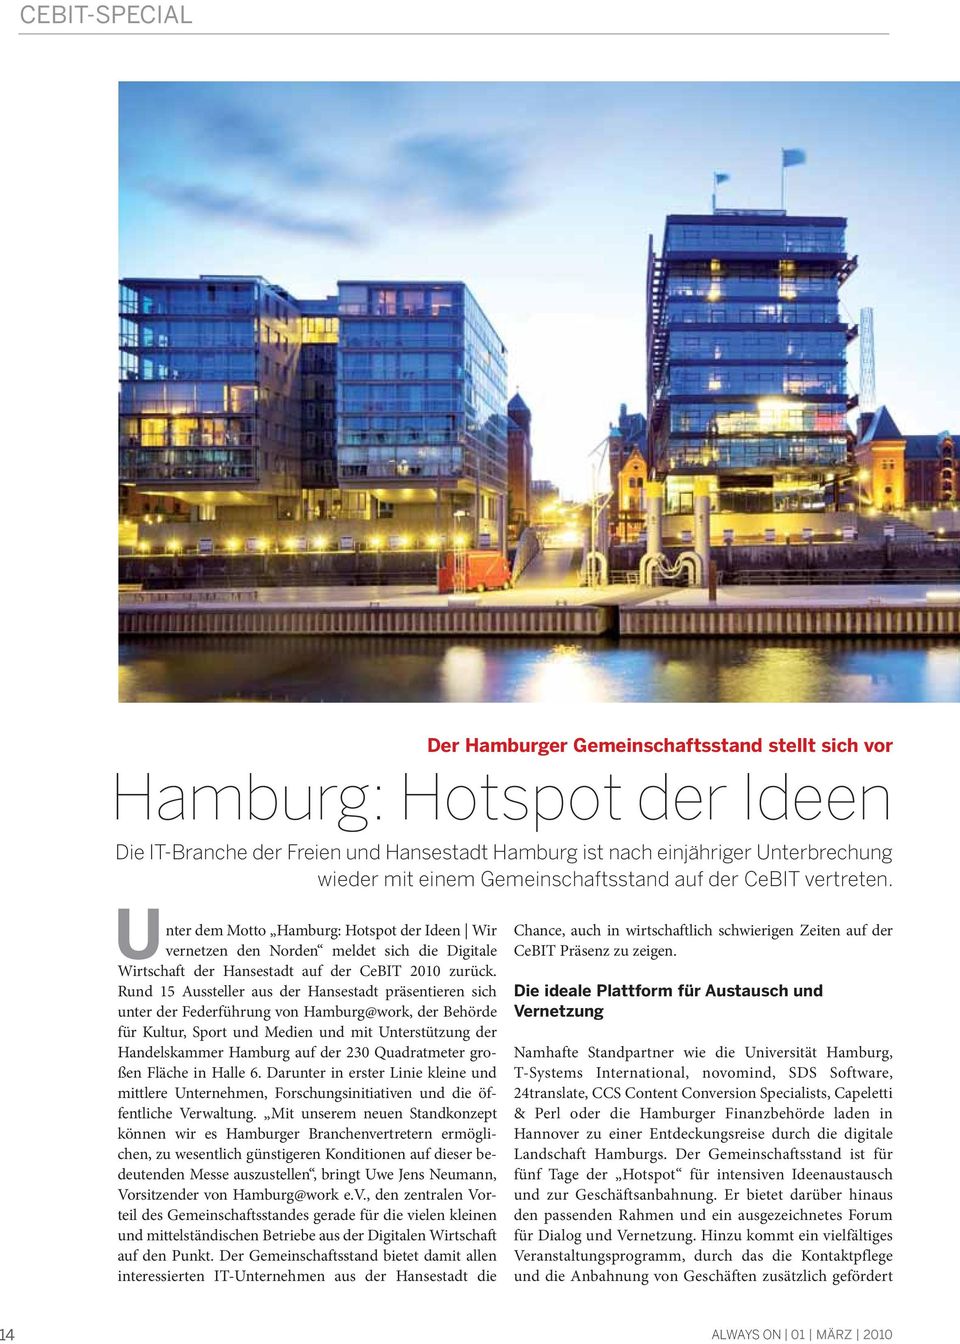 Rund 15 Aussteller aus der Hansestadt präsentieren sich unter der Federführung von Hamburg@work, der Behörde für Kultur, Sport und Medien und mit Unterstützung der Handelskammer Hamburg auf der 230